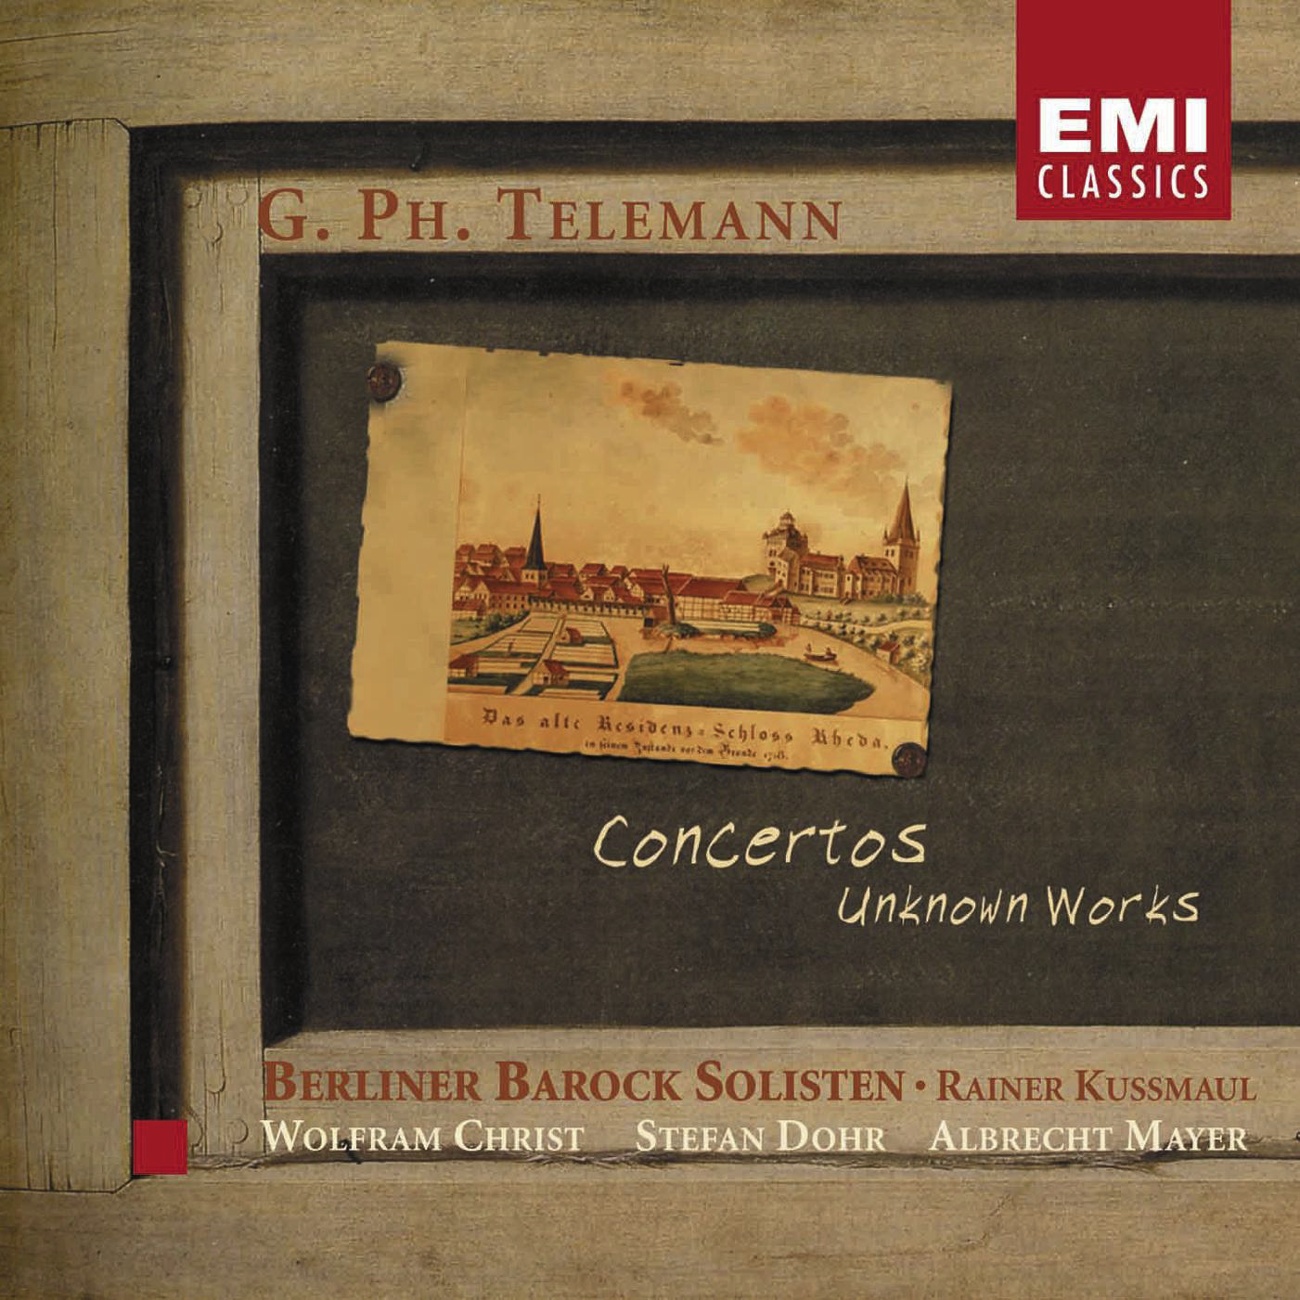 Concerto for violin, strings and basso continuo in G: Presto